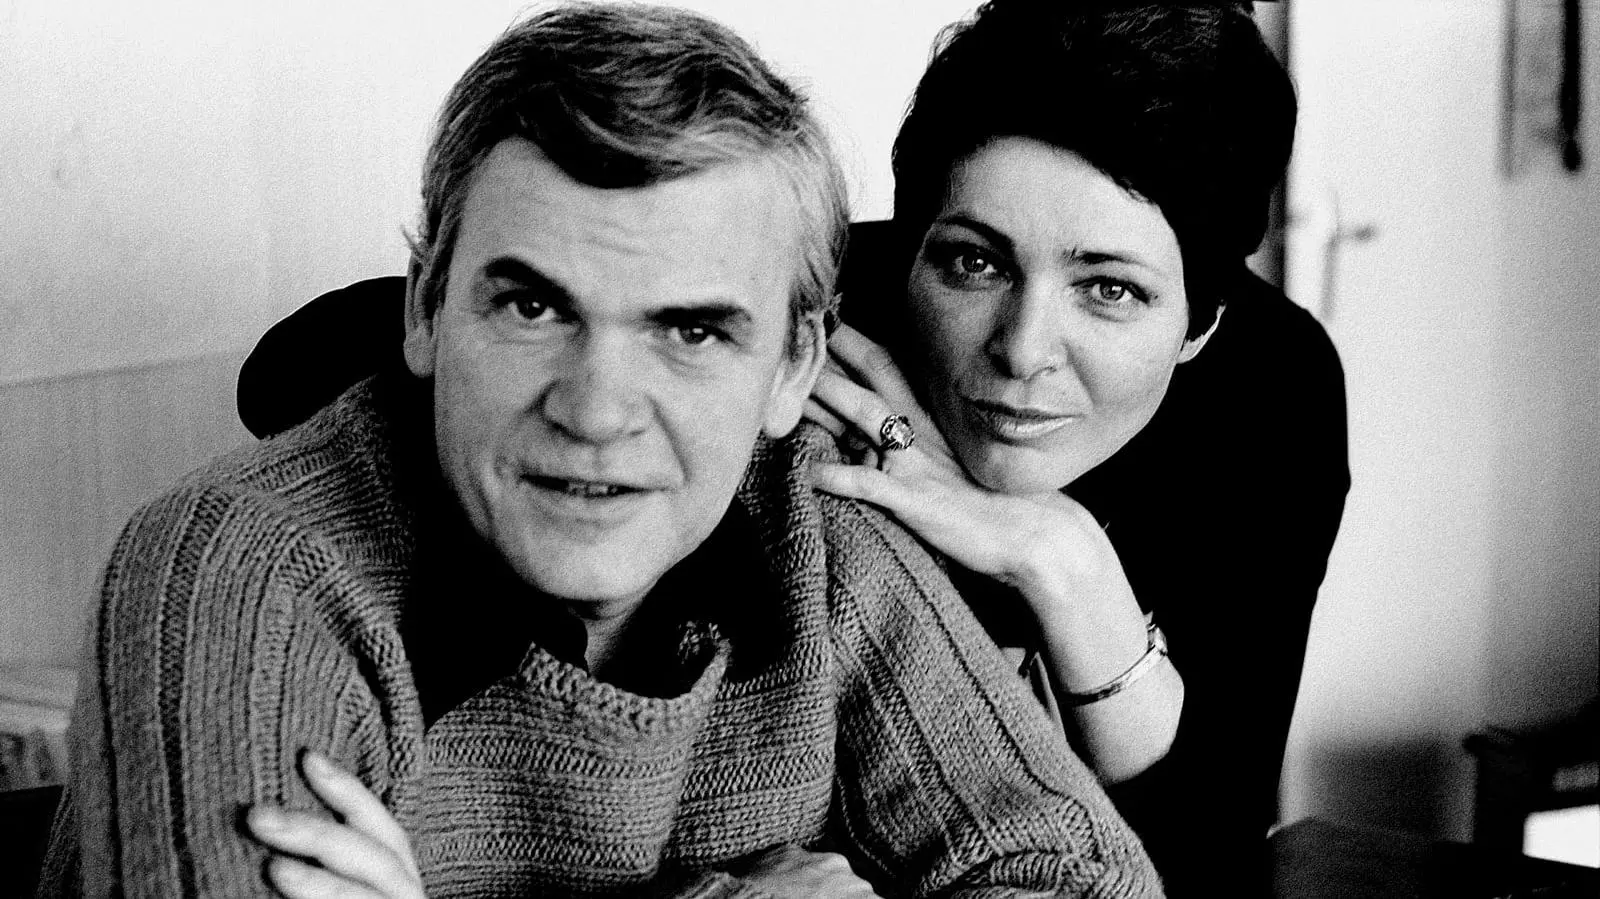 Milan Kundera: de la broma a la insignificancia_peliplat